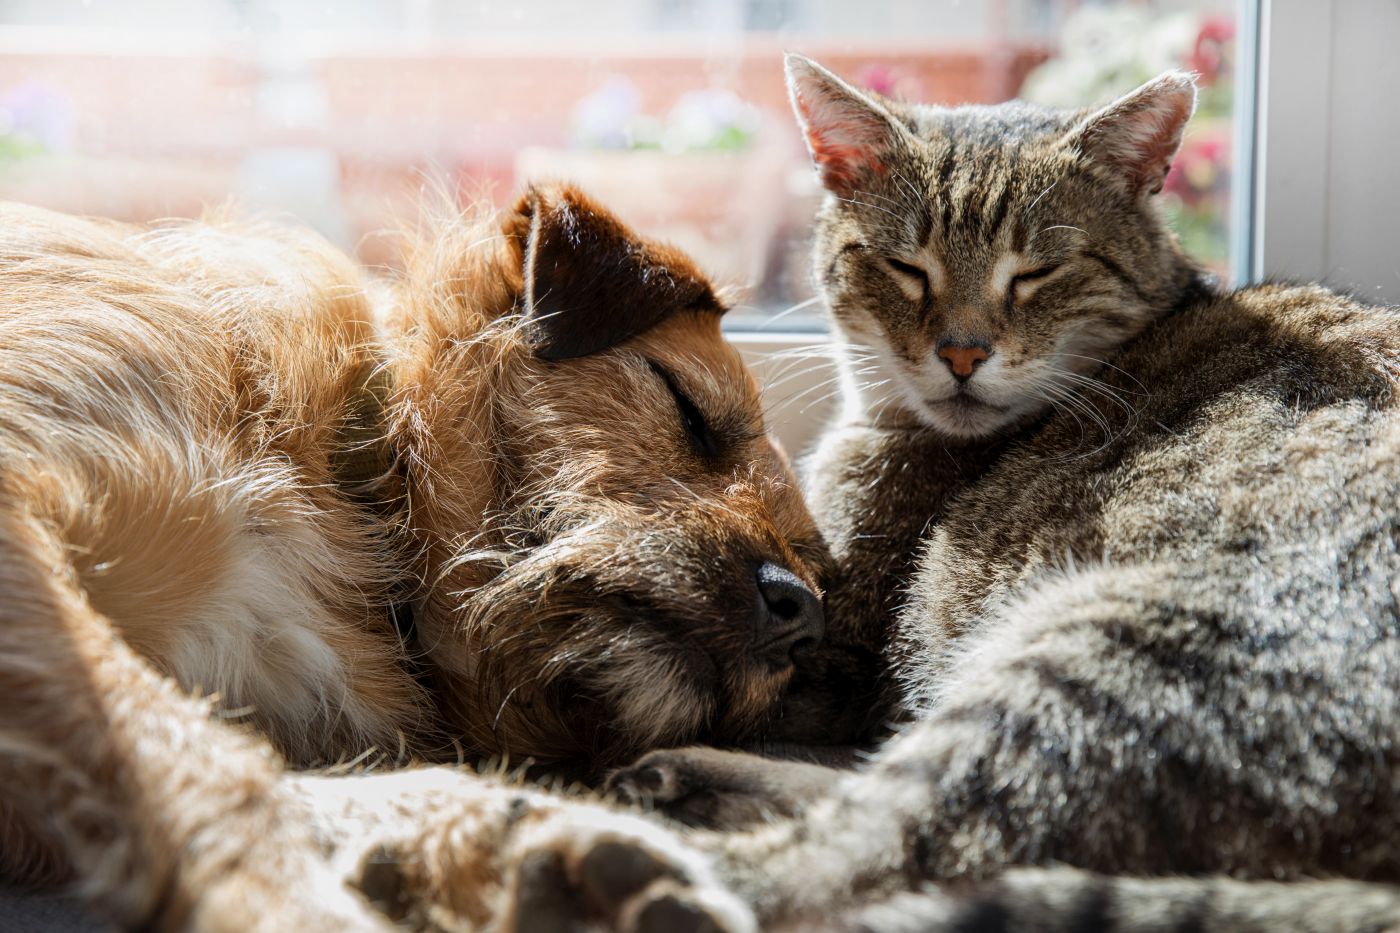 katze und hund liegen nebeneinander vor fenster